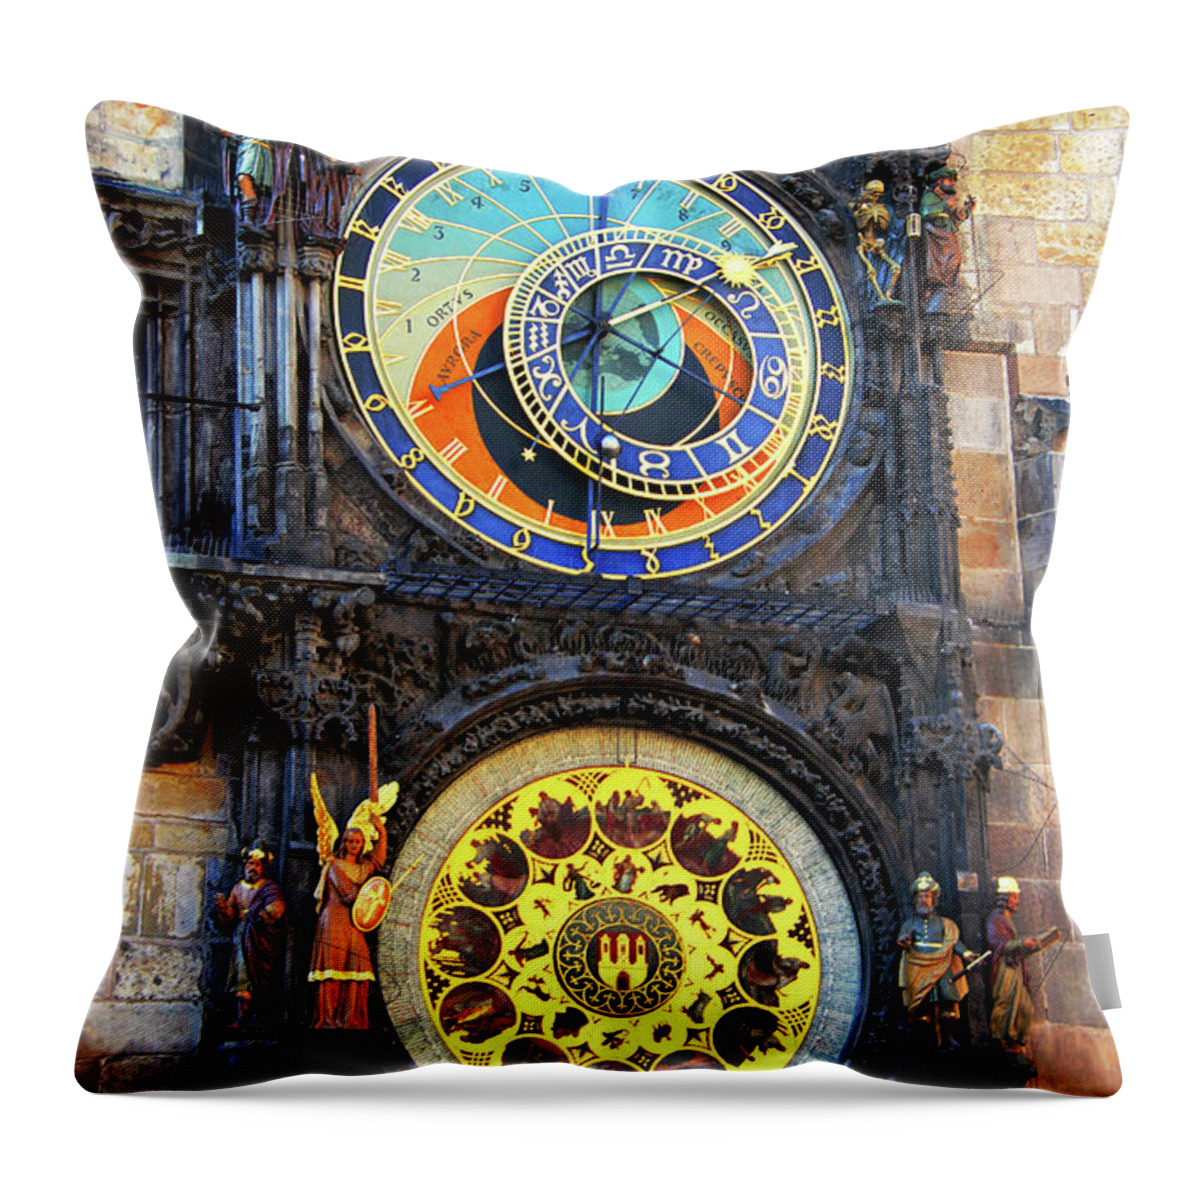 Prague Throw Pillow featuring the photograph Prague Astronomical Clock 2 by Mariola Bitner